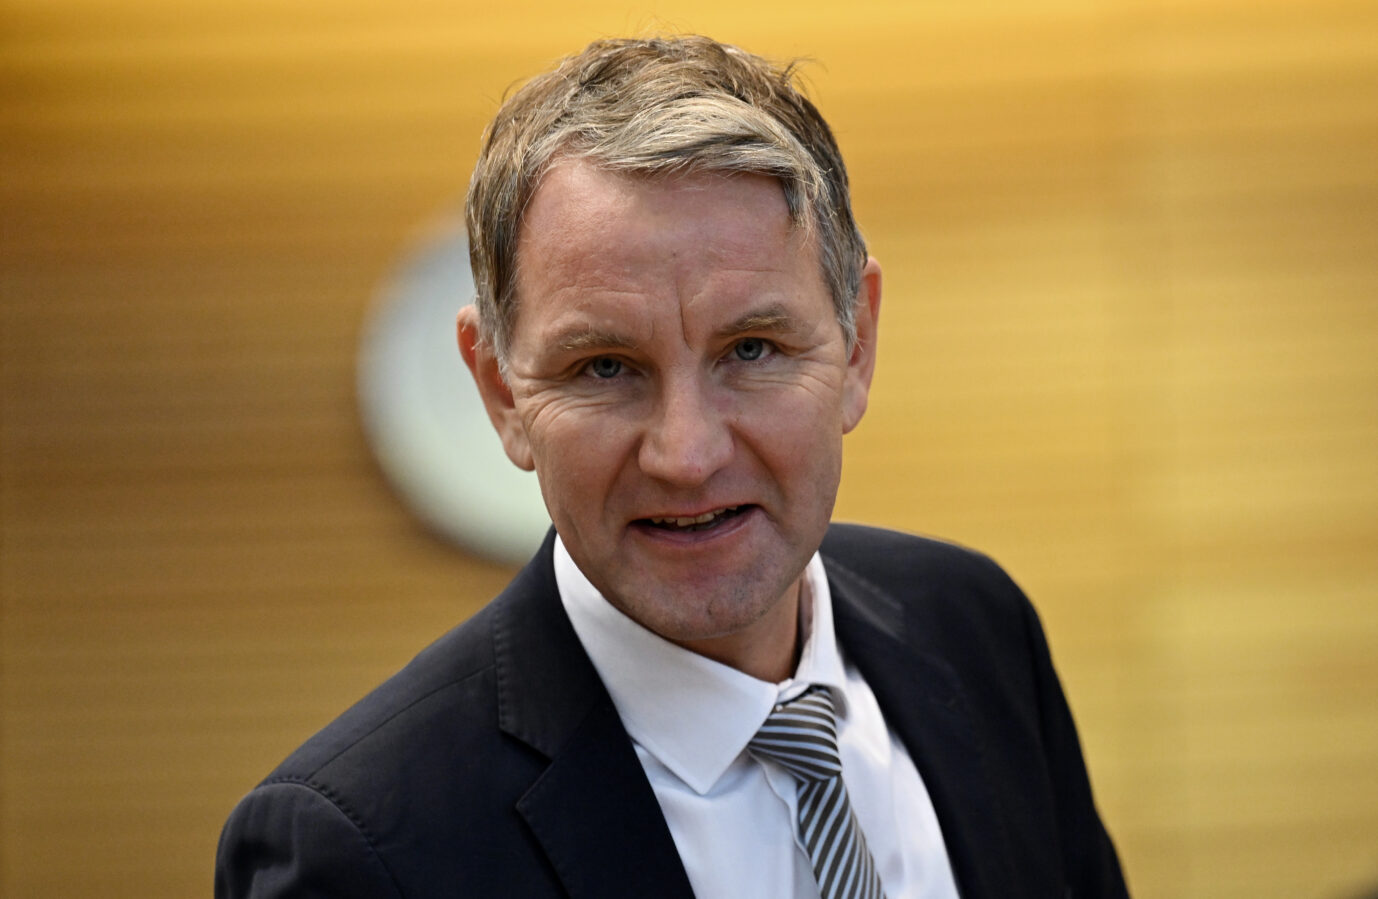 Laut einer Petition soll der Thüringer AfD-Chef Björn Höcke seine bürgerlichen Grundrechte verlieren. Der Bundestag entscheidet.